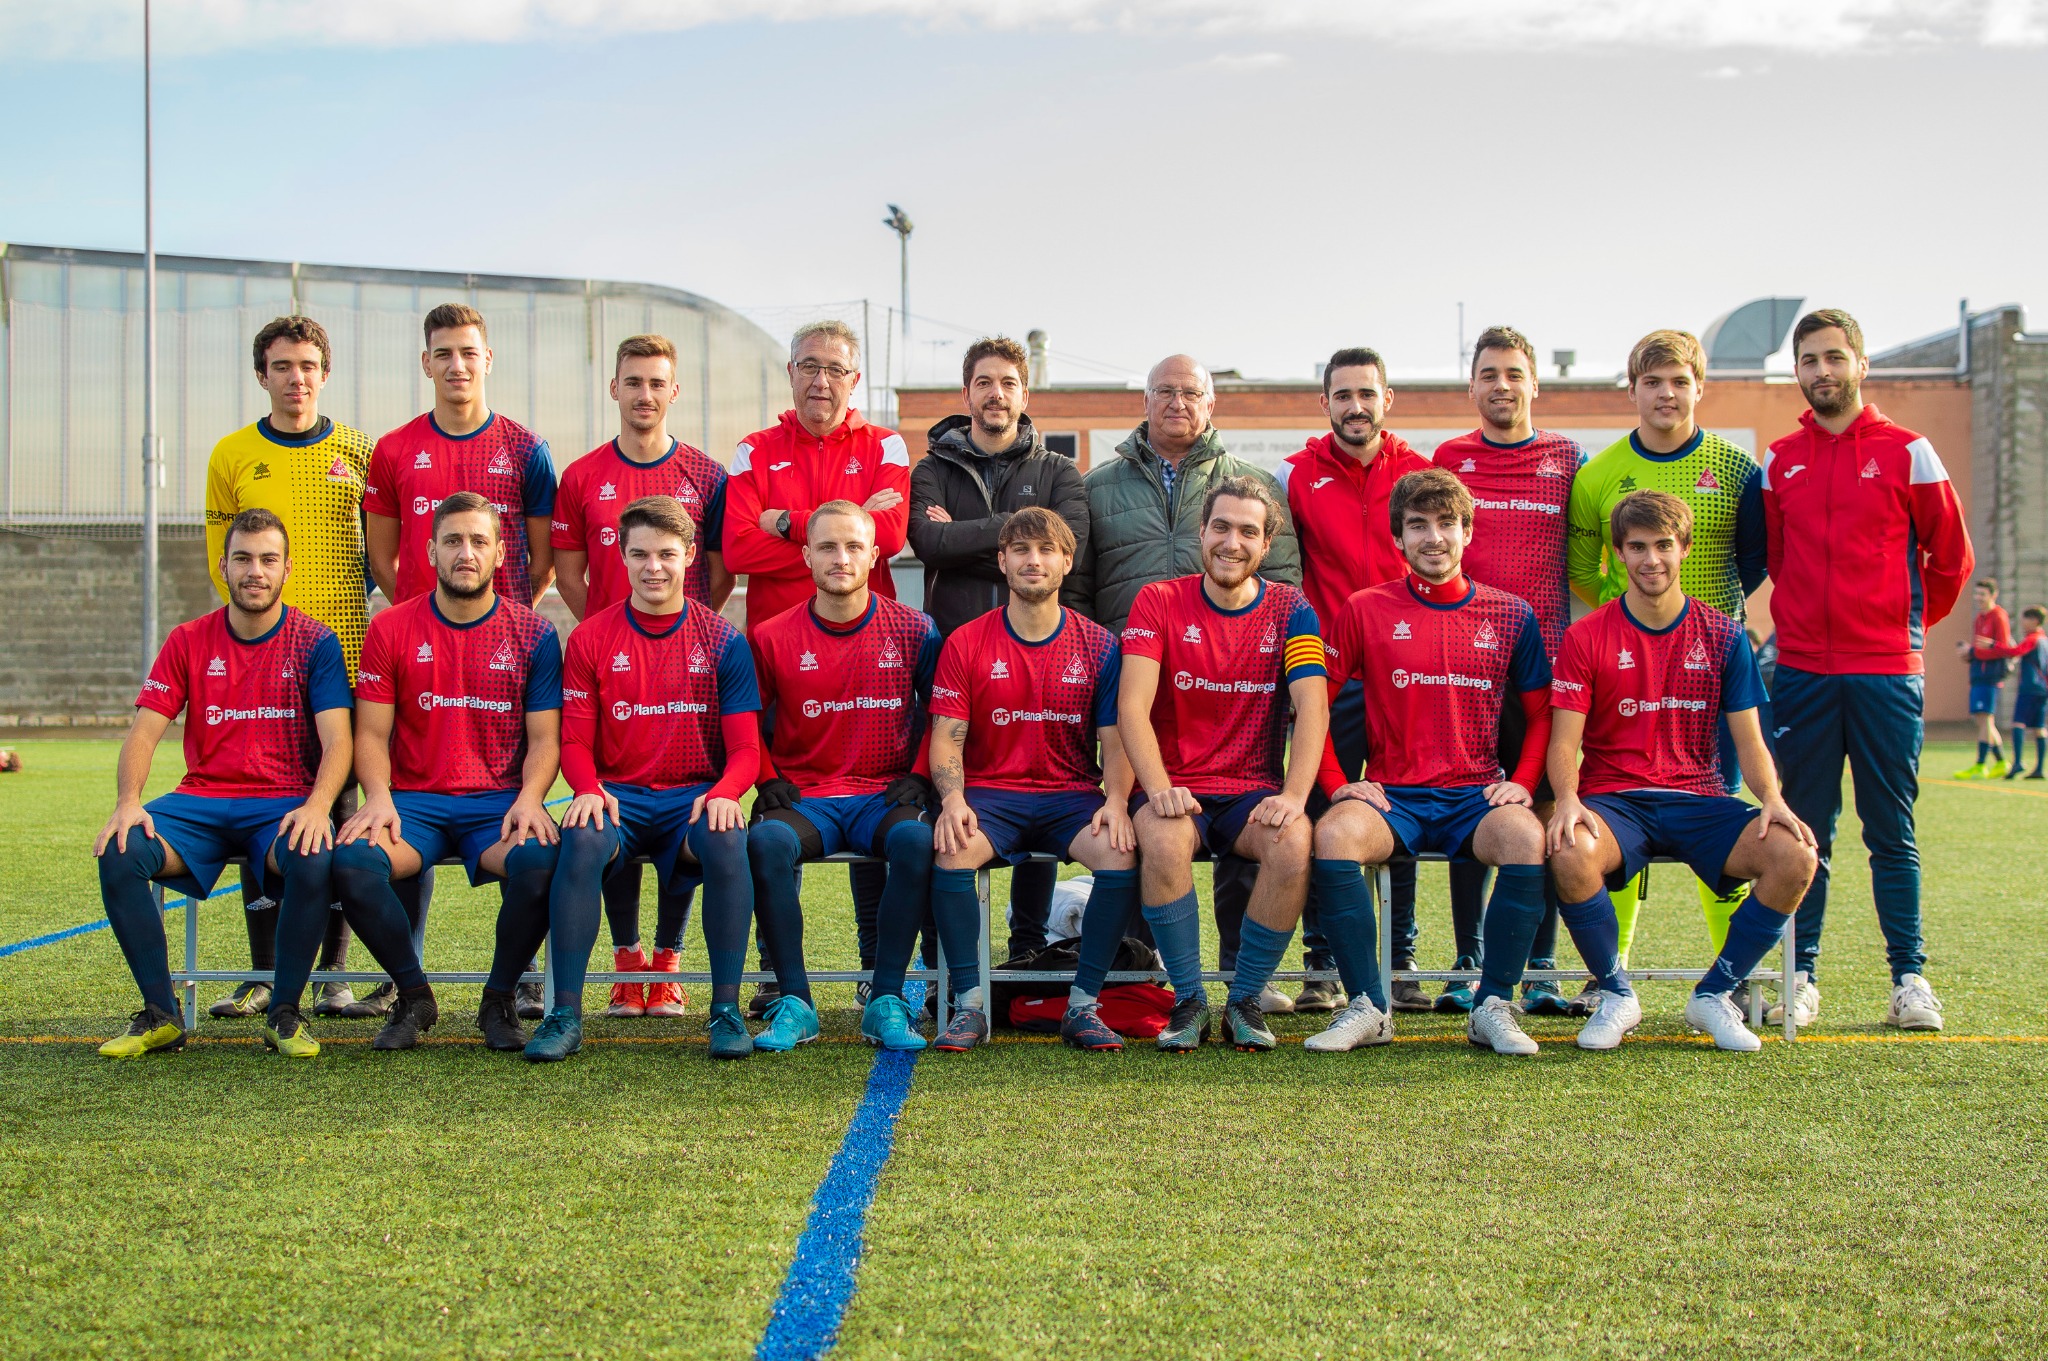 Plana Fābrega Vic patrocina el equipo de fútbol del Oar Vic 